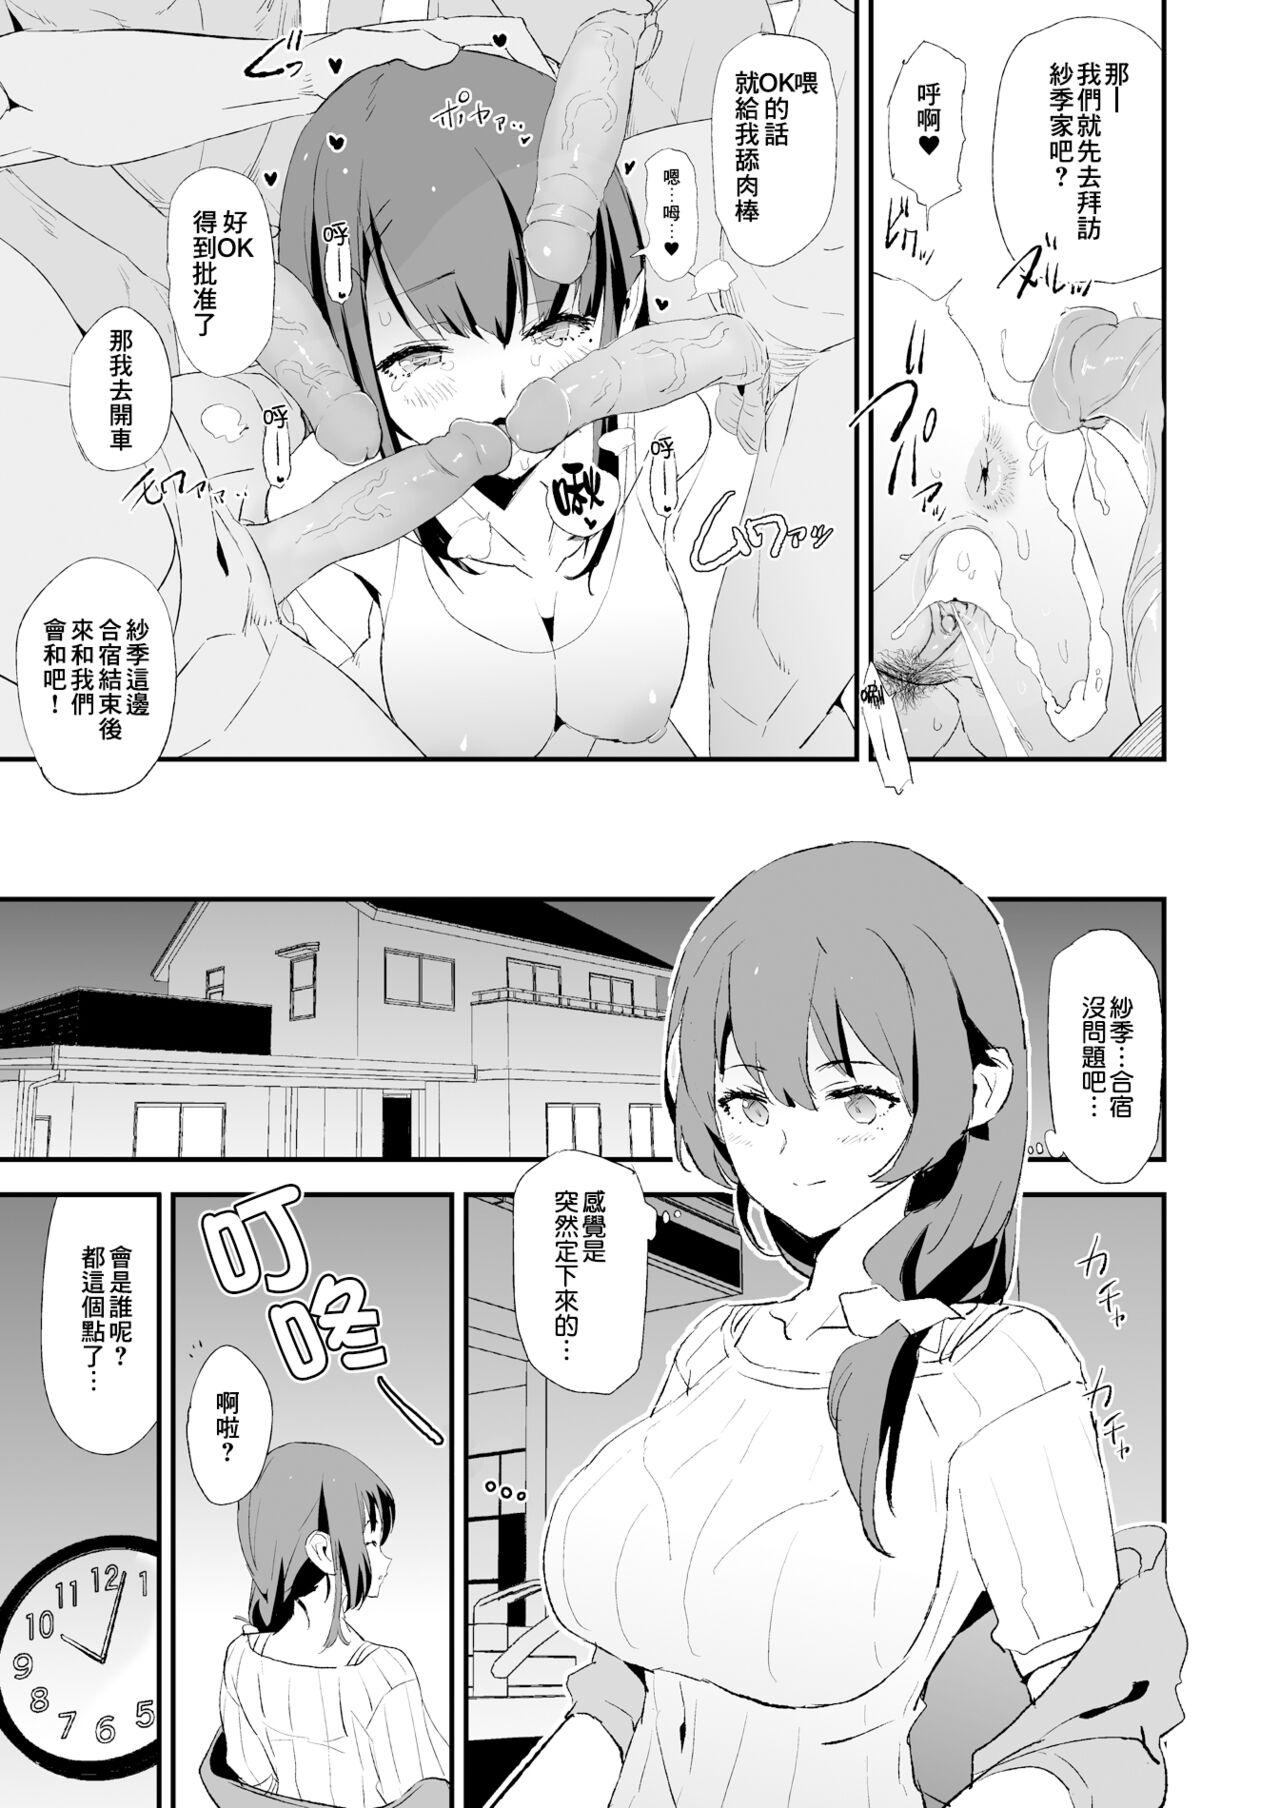 Breeding Musume no Tsugi wa Mama Onaho - Onaho Gasshuku #2 + Omake - Original Sixtynine - Page 9